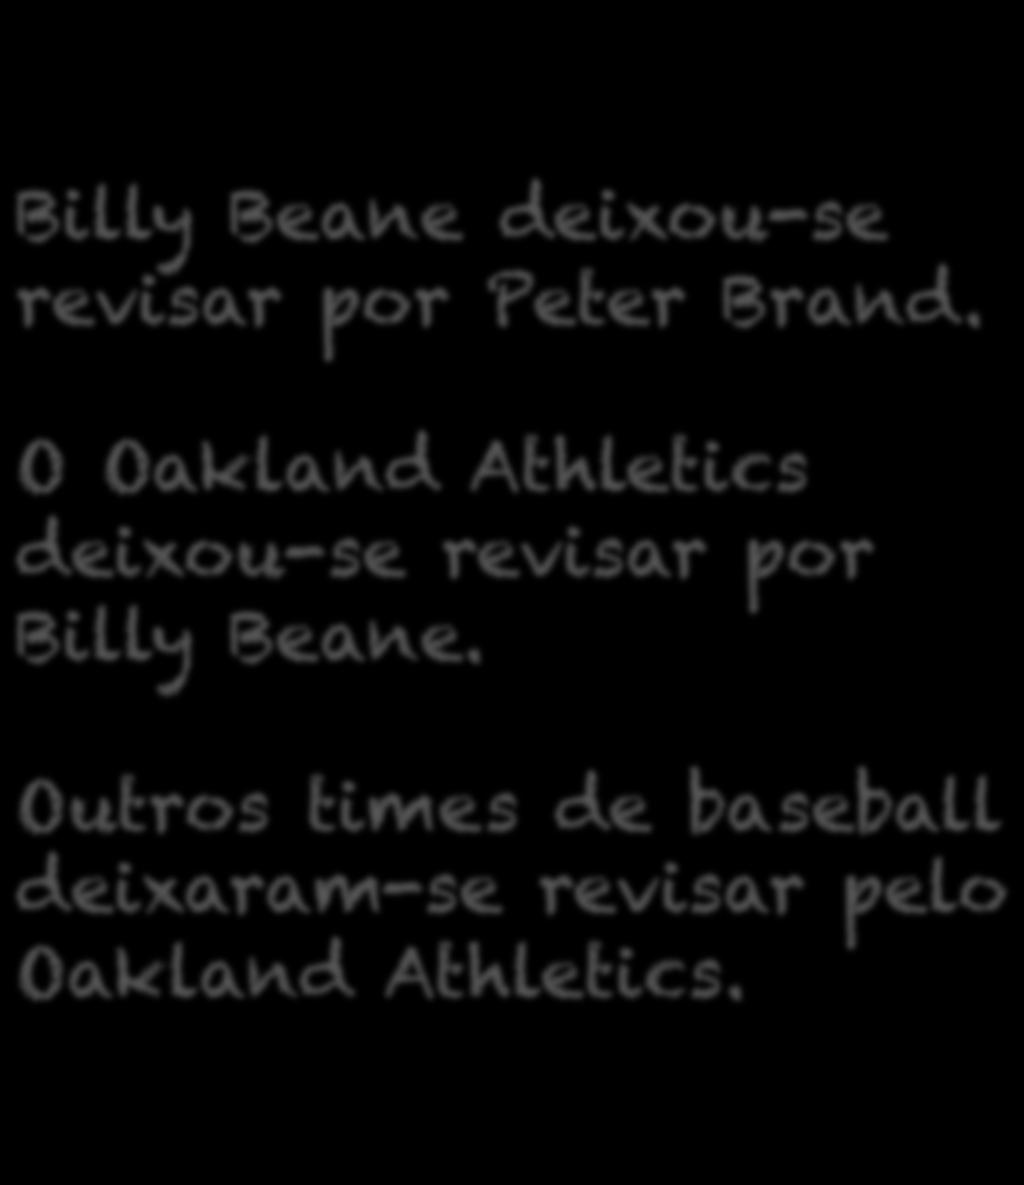 Billy Beane deixou-se revisar por Peter Brand.